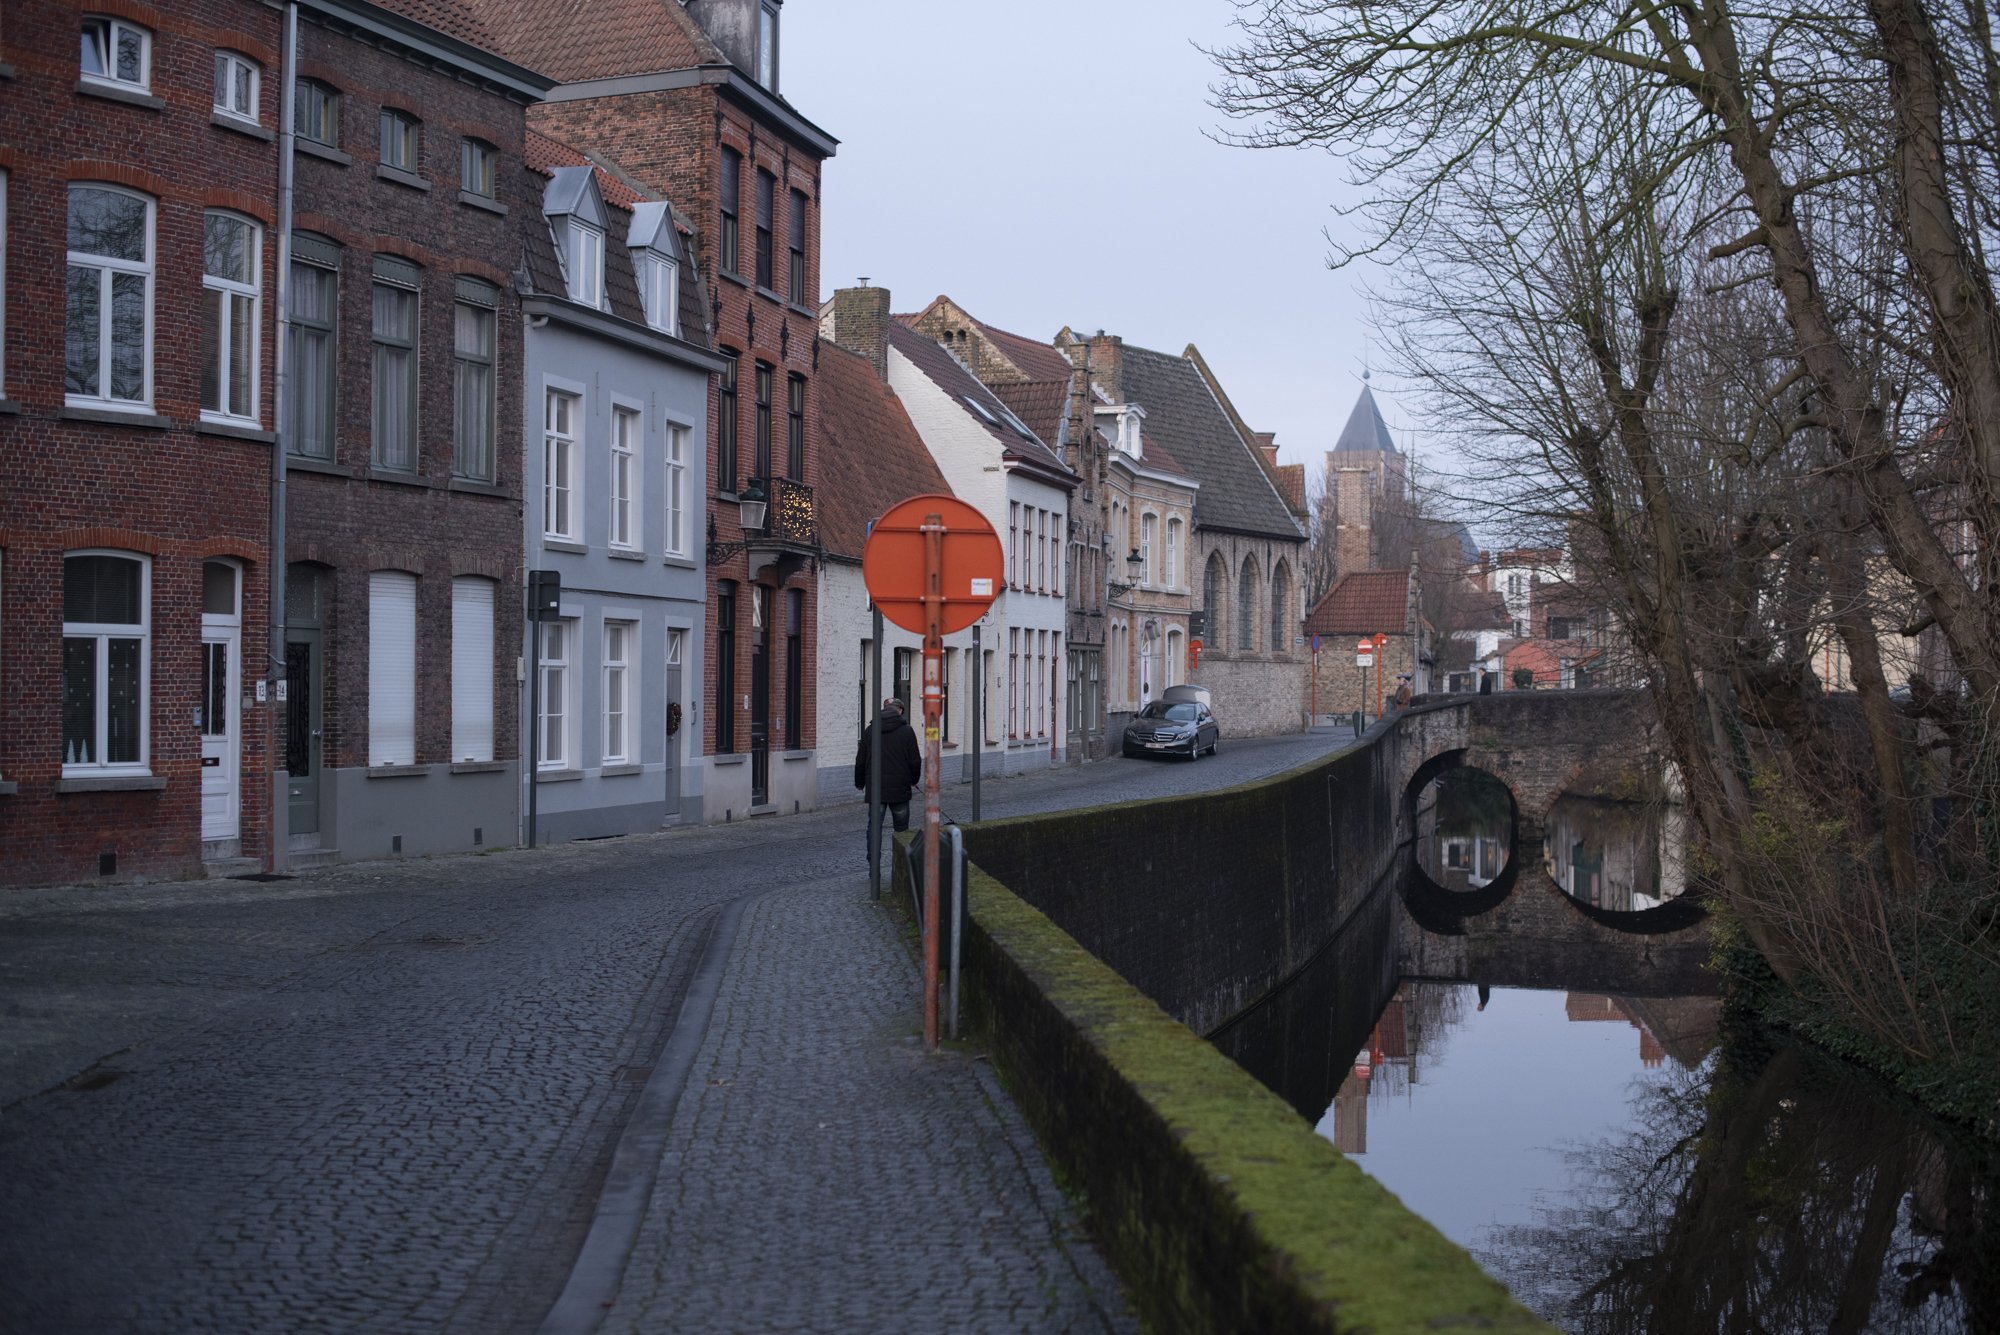  Brugge, Belgium  